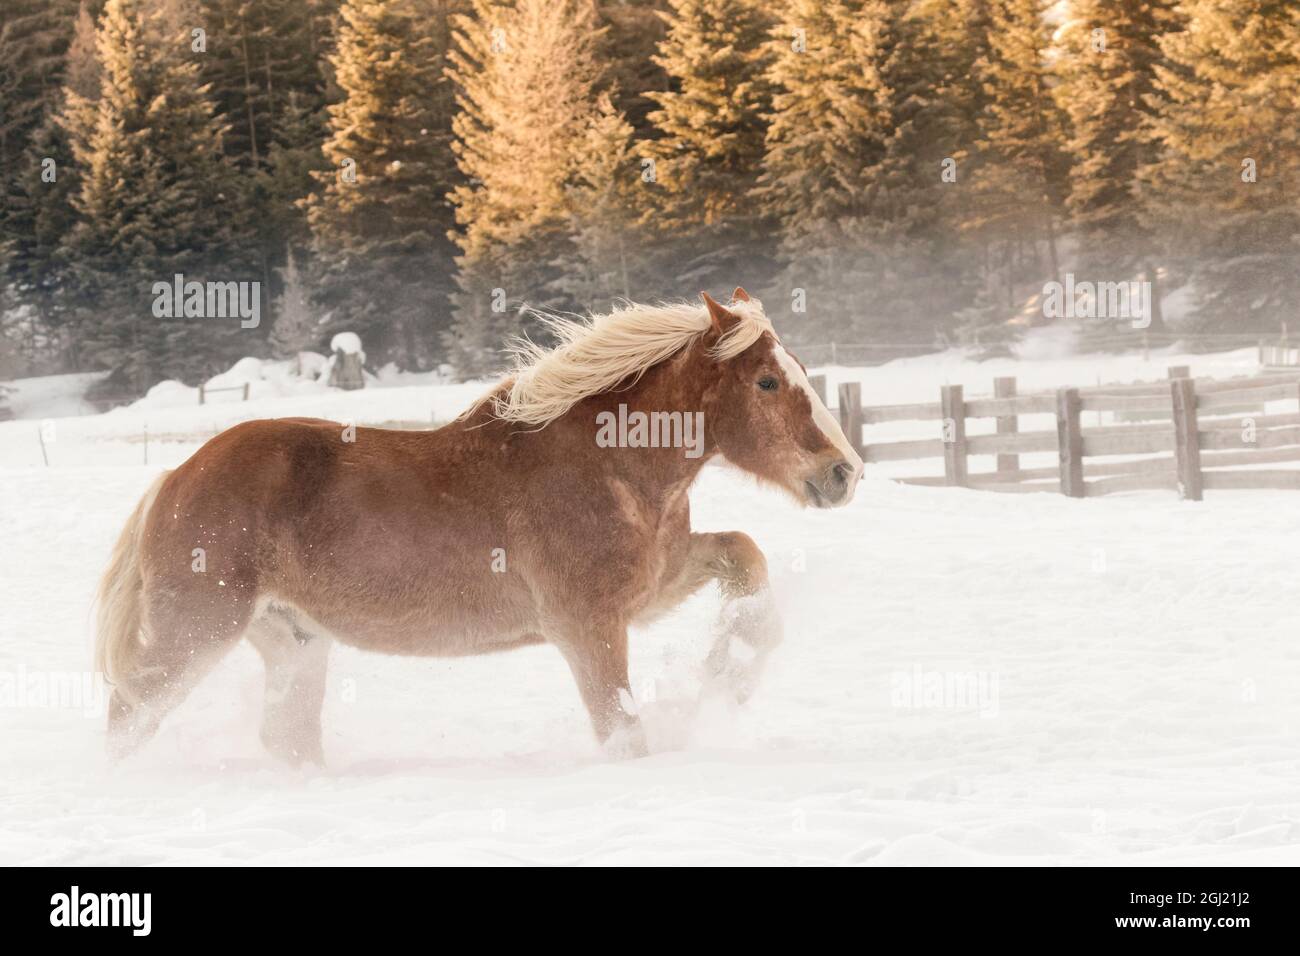 Cavallo belga roundup in inverno, Kalispell, Montana. Equus caballus ferus Foto Stock